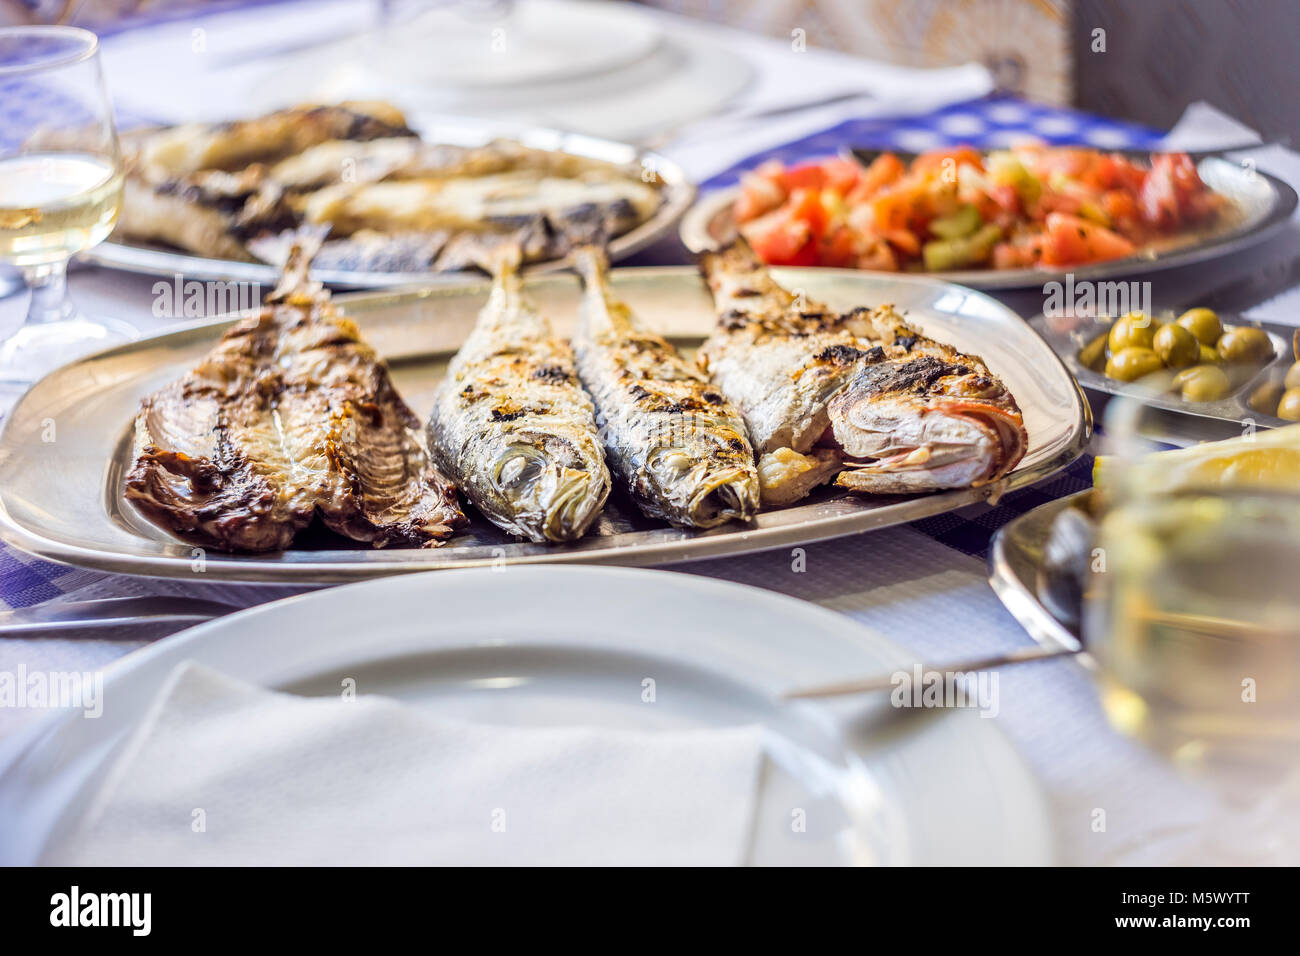 Fête du poisson : loup de mer, Golden, chinchard accompagné de salade de tomates, des olives vertes et du vin blanc, Portugal Banque D'Images